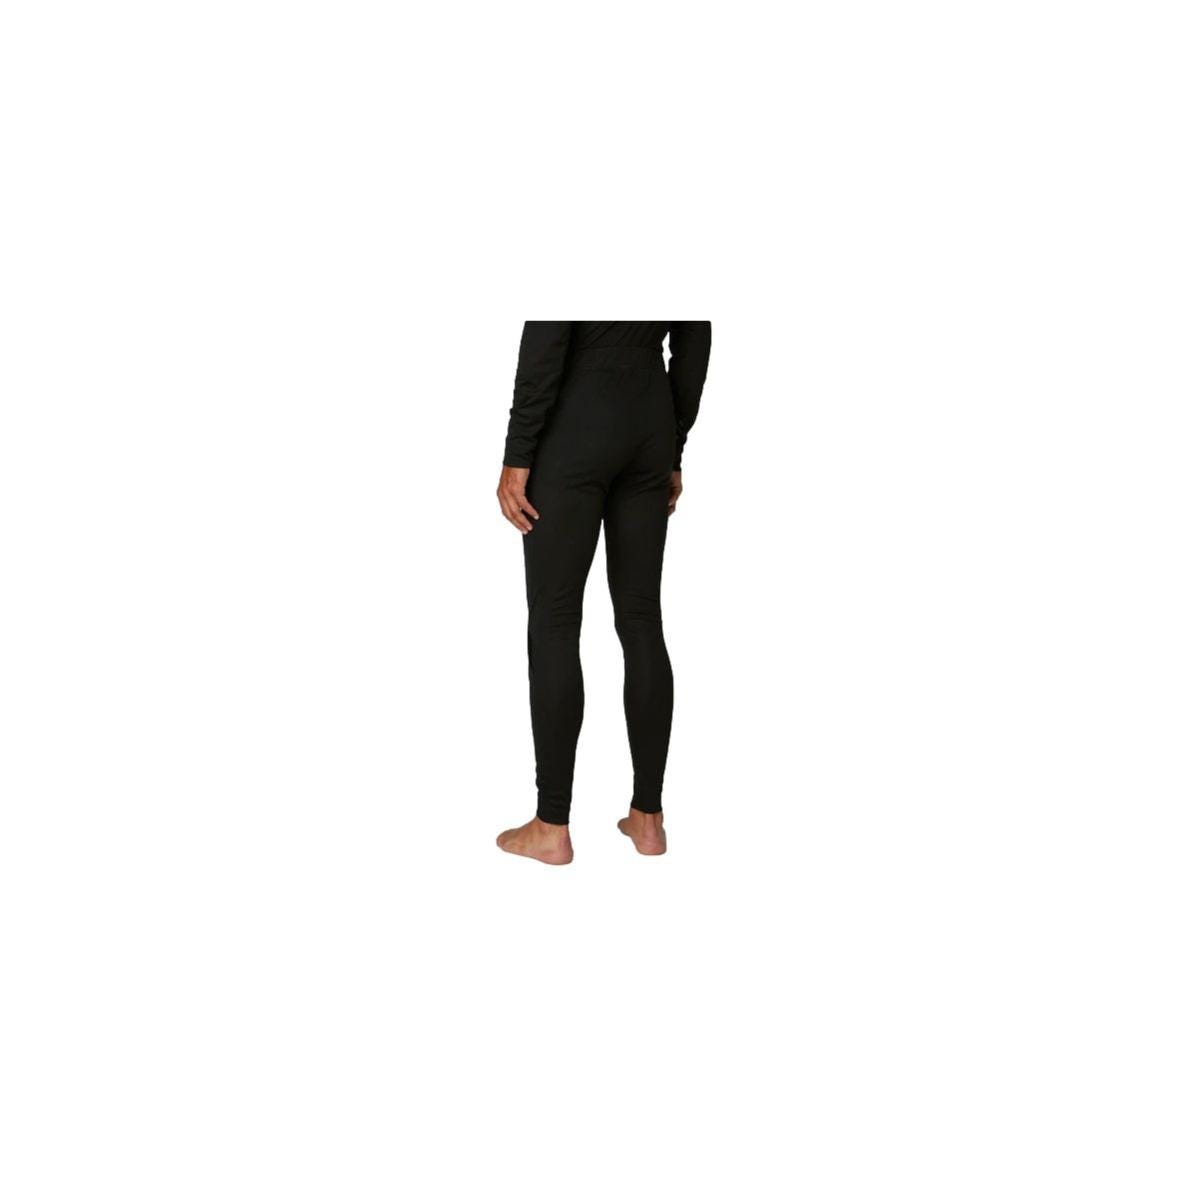 Pantalon sous-vêtement technique Lifa Noir - Helly Hansen - Taille S 3